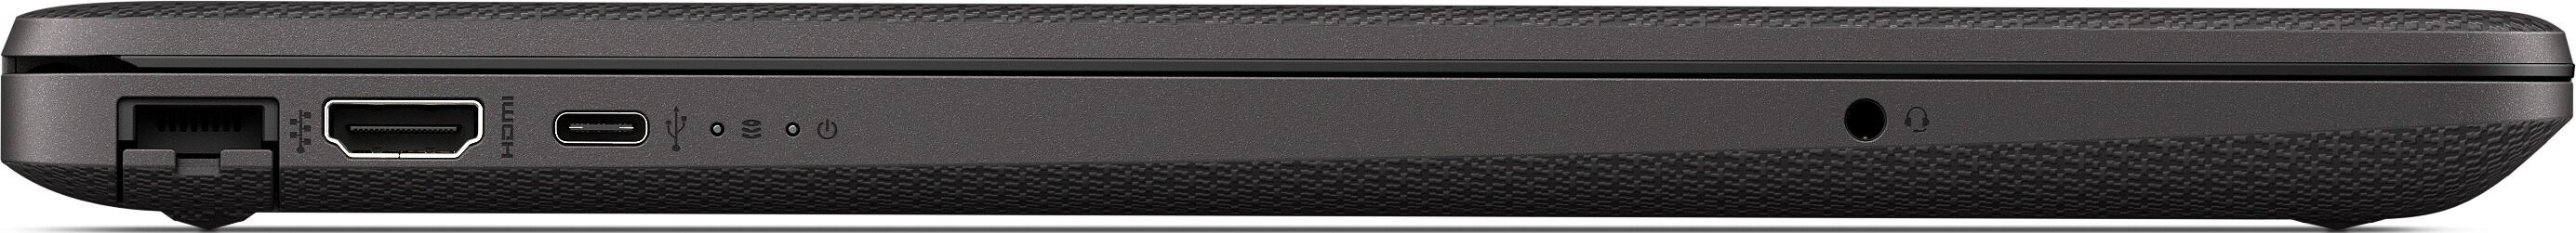 Ноутбук HP 255 G8 R5-3500U 2.1GHz,15.6" FHD (1920x1080) AG,8Gb DDR4(1),256Gb SSD,41Wh,1.8kg,1y,Dark Ash Silver,Dos-39313